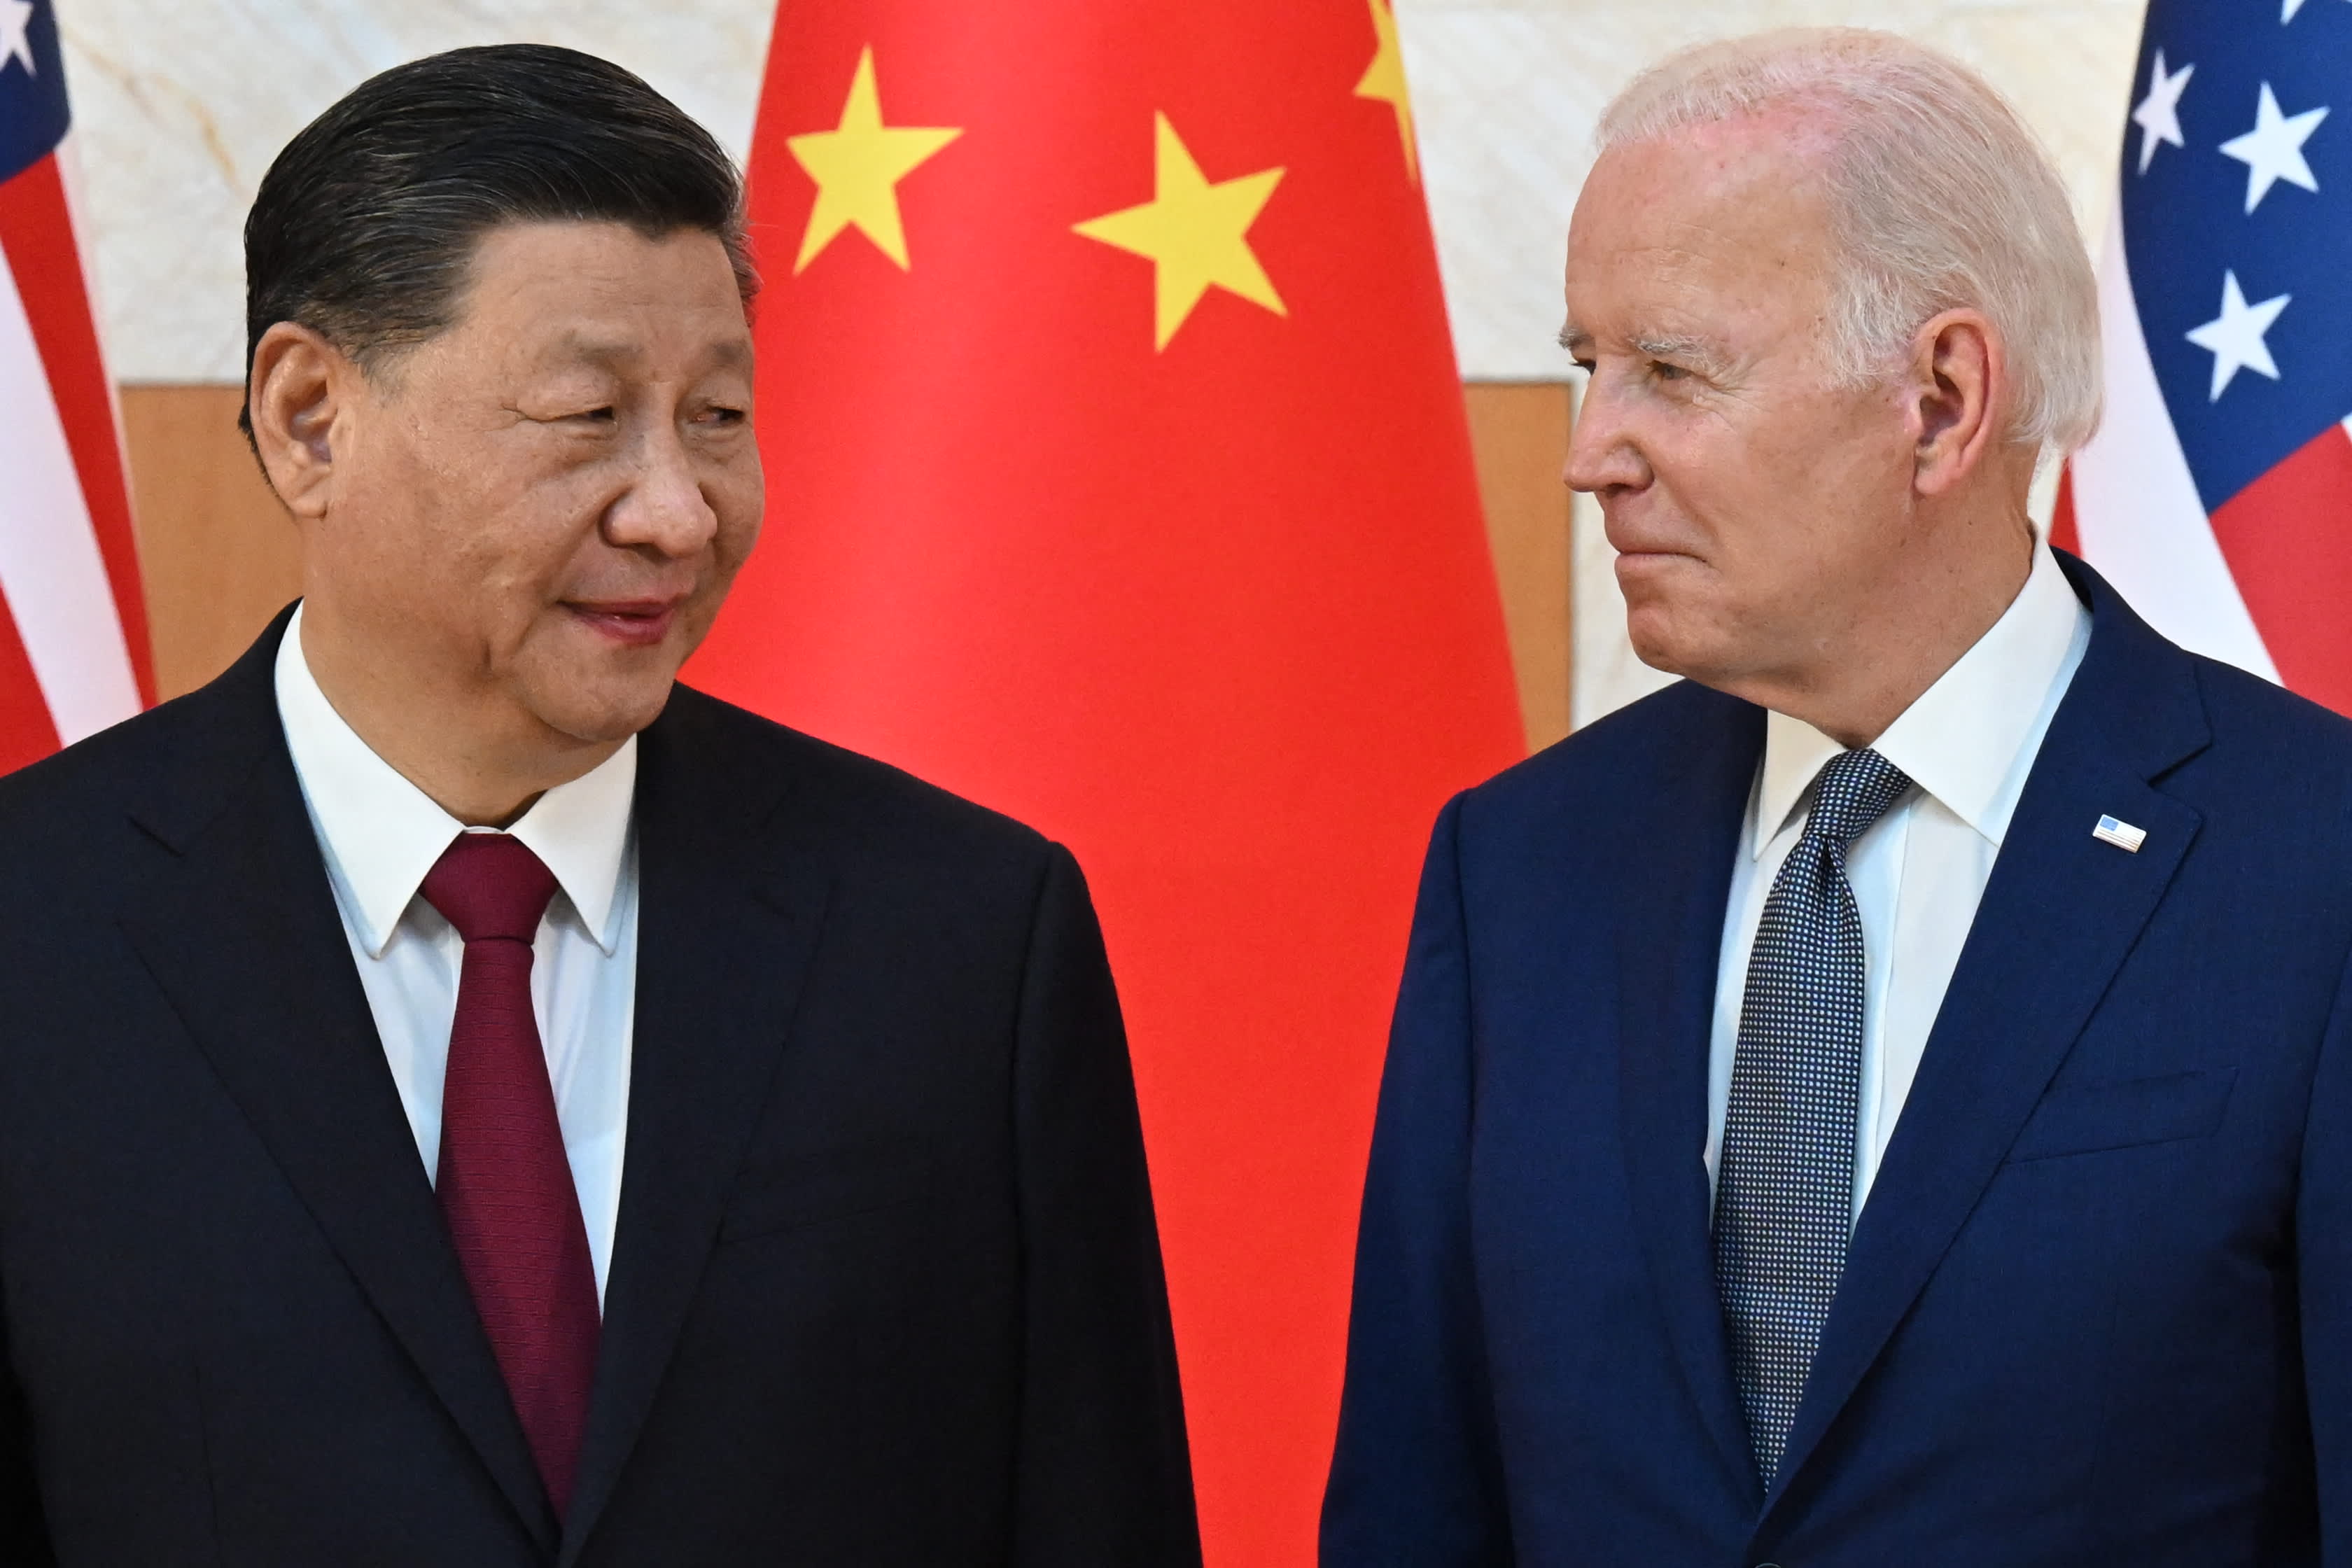 Le relazioni USA-Cina sono su un percorso pericoloso senza fiducia da entrambe le parti: Roach, Cohen